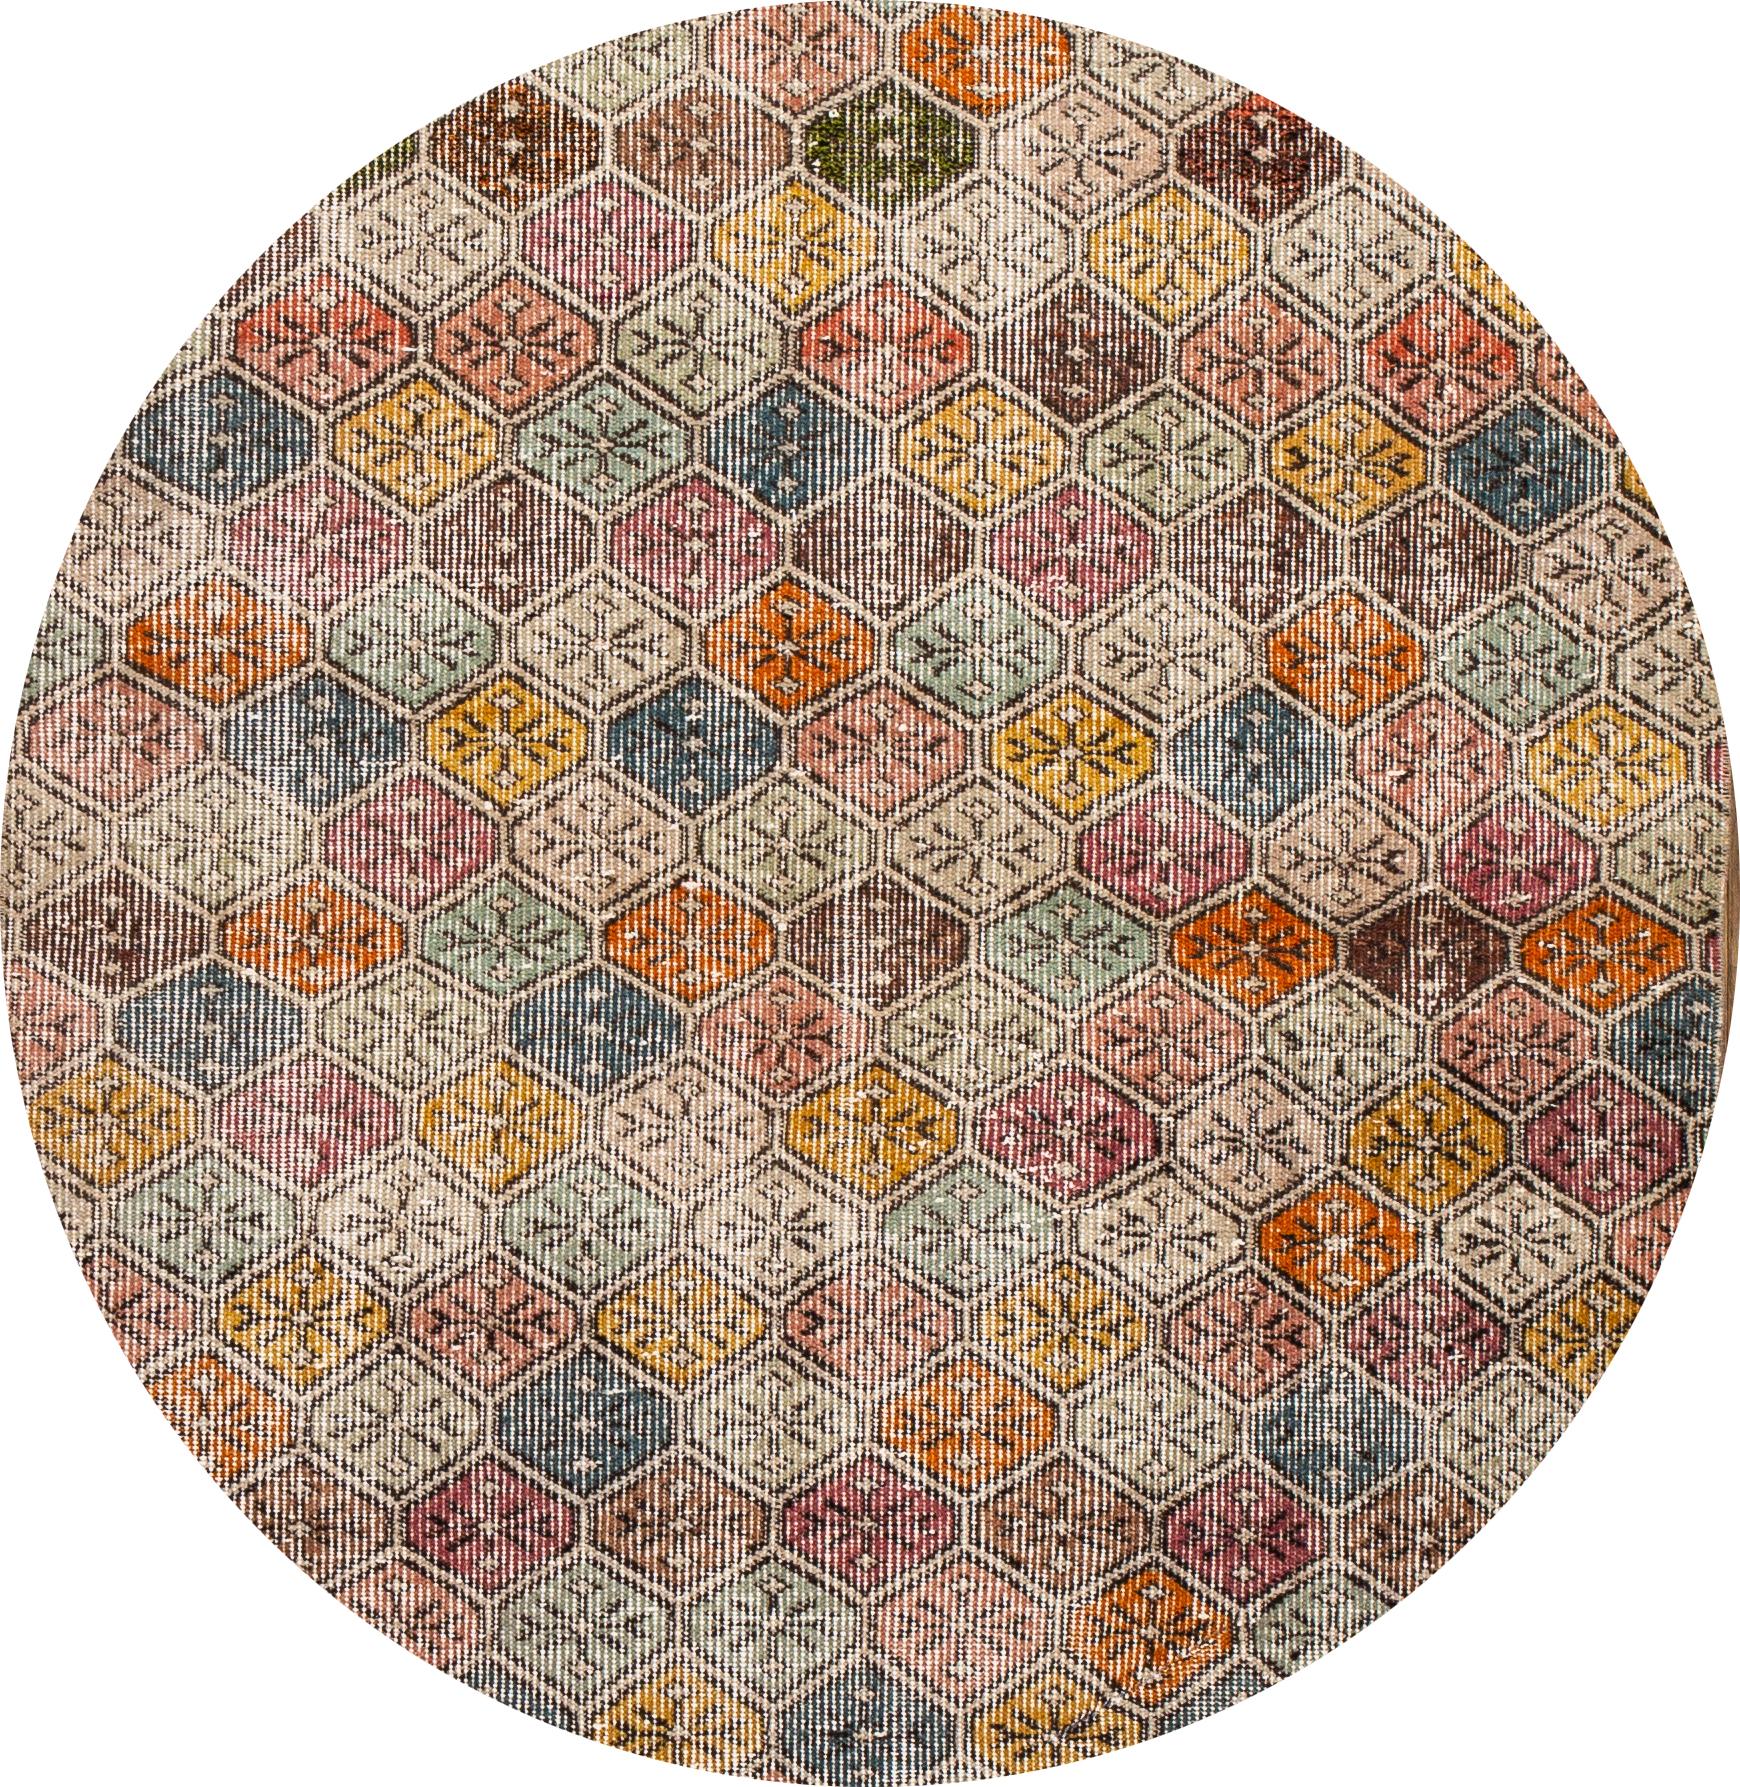 Schöner türkischer Teppich im Vintage-Stil, handgeknüpft aus Wolle mit einem mehrfarbigen Feld in einem wunderschönen geometrischen Allover-Muster.

Dieser Teppich misst: 3' 6